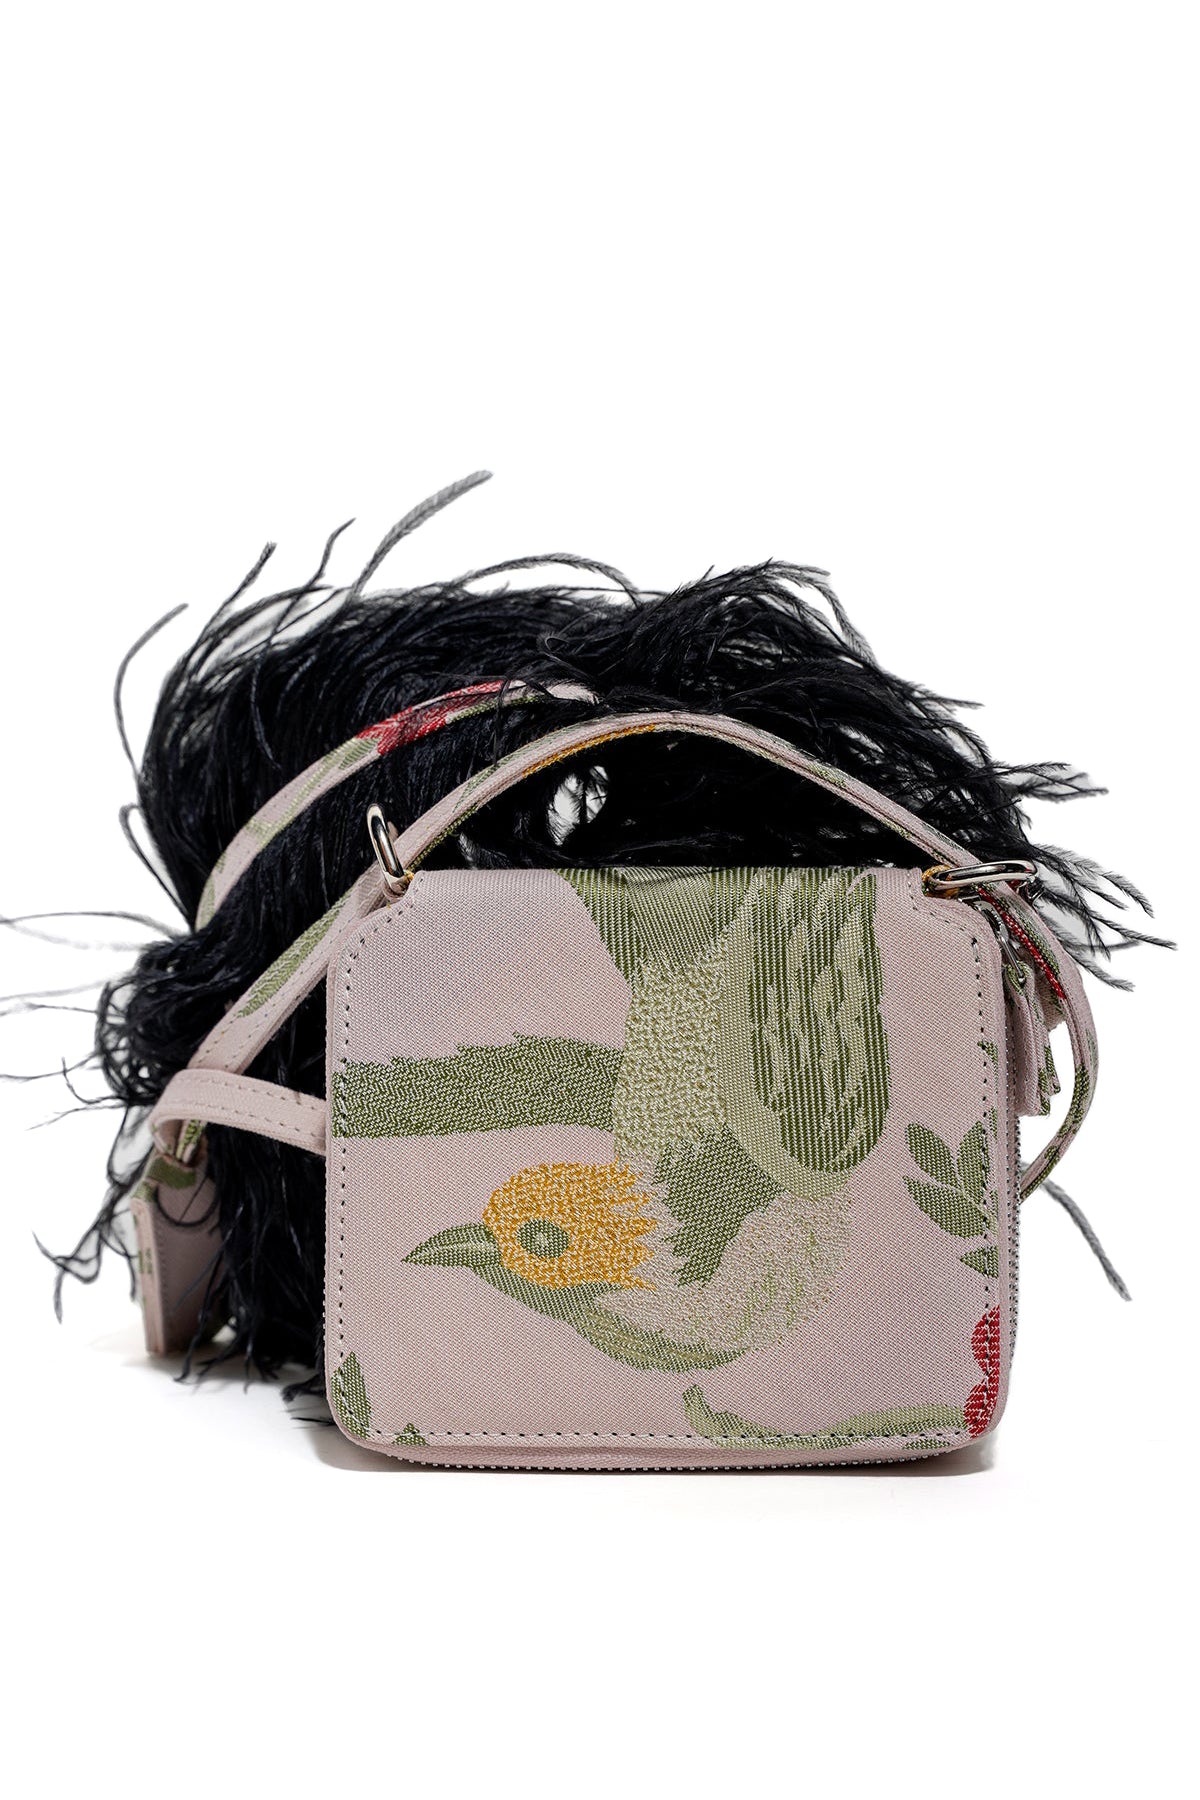 BIRD BROCADE WALLET BAG WITH FEATHER STRAP marques almeida